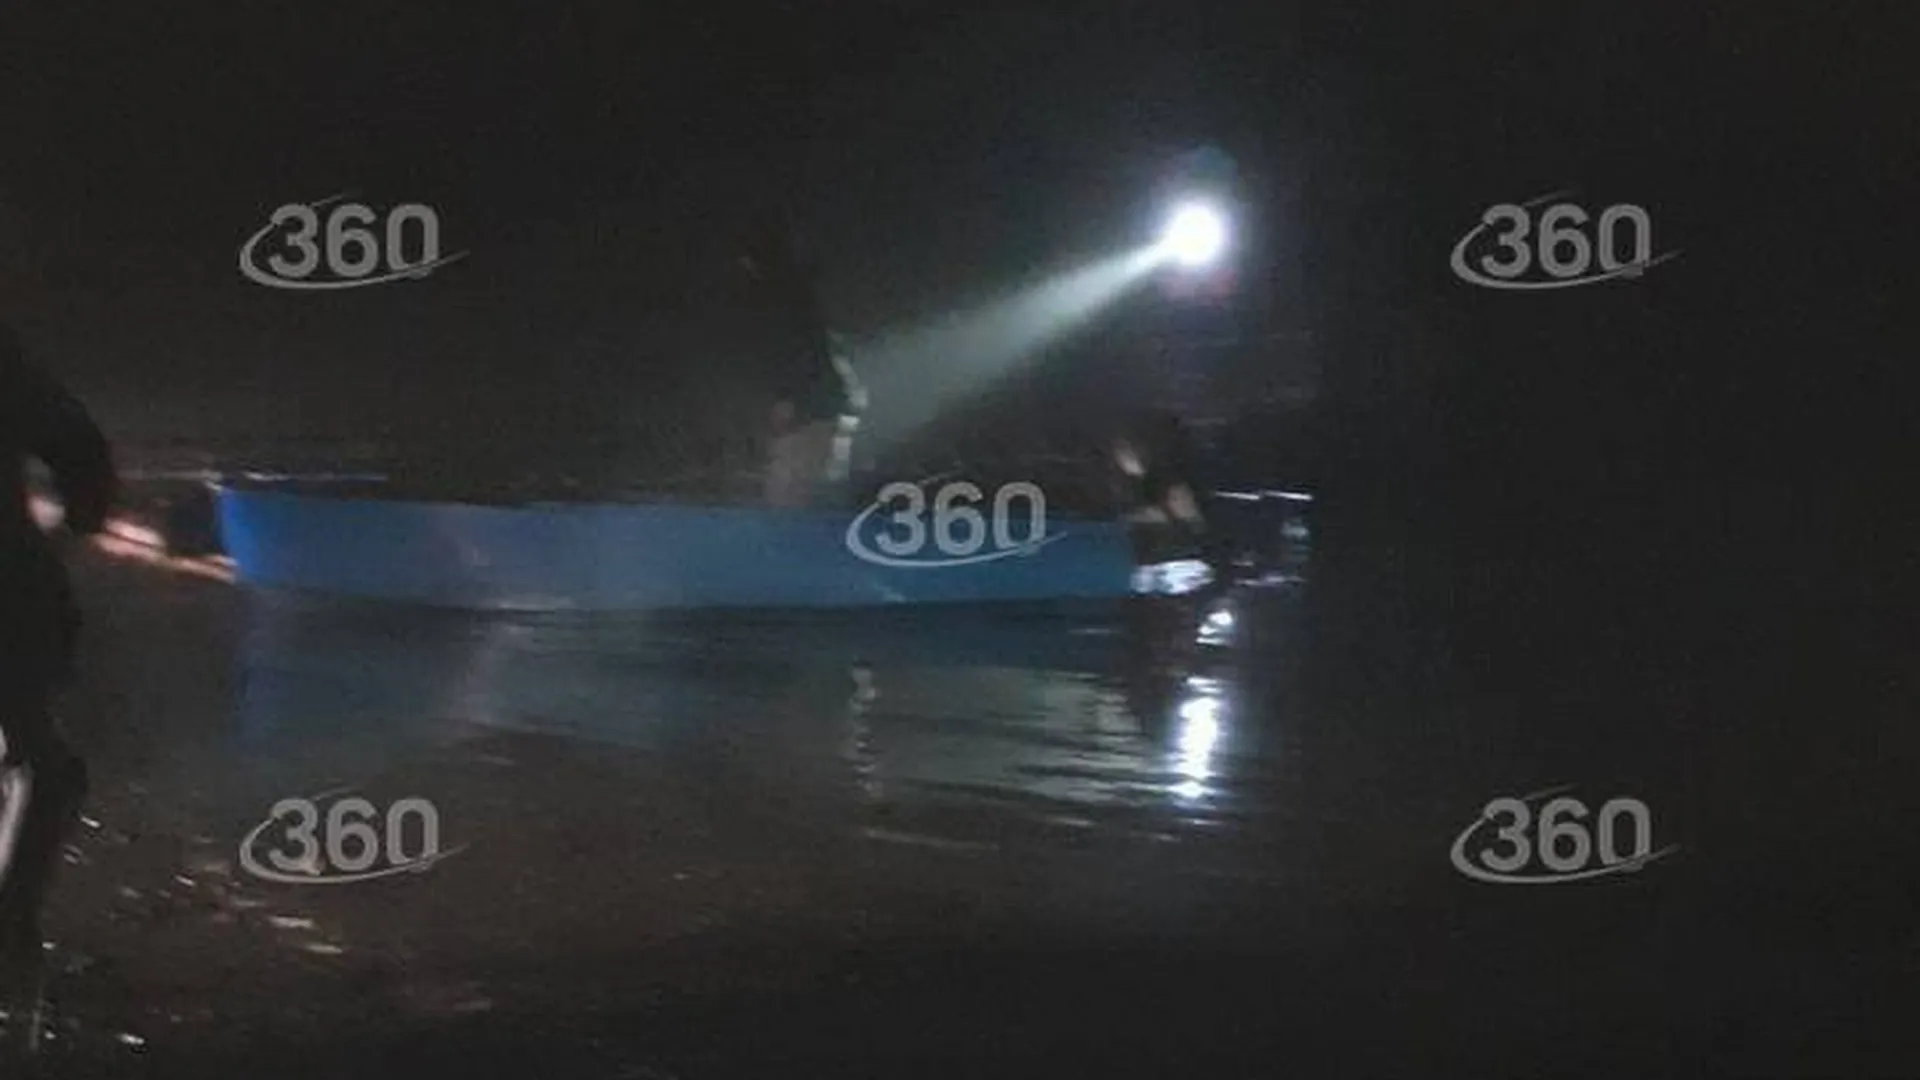 Спасенных из рухнувшего самолета людей под Иркутском начали доставлять на берег на лодках